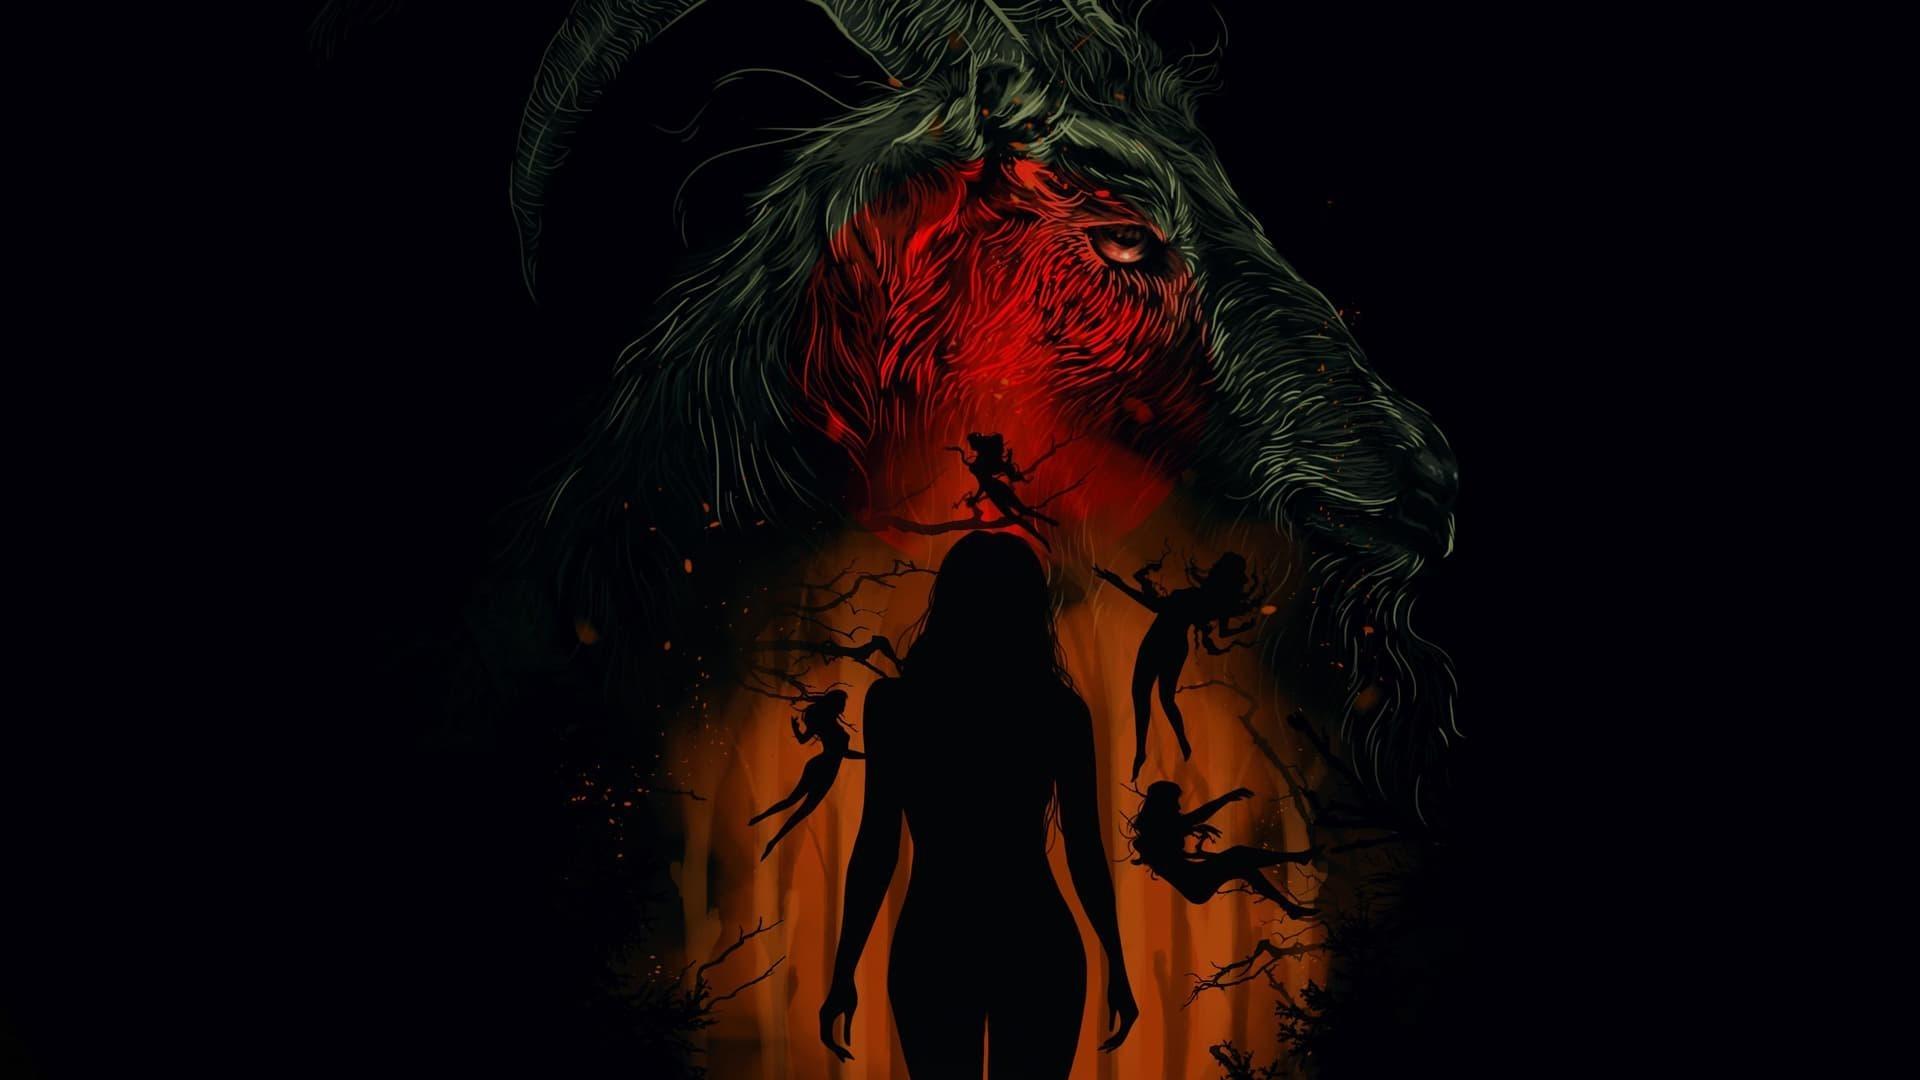 دانلود فیلم The Witch 2015